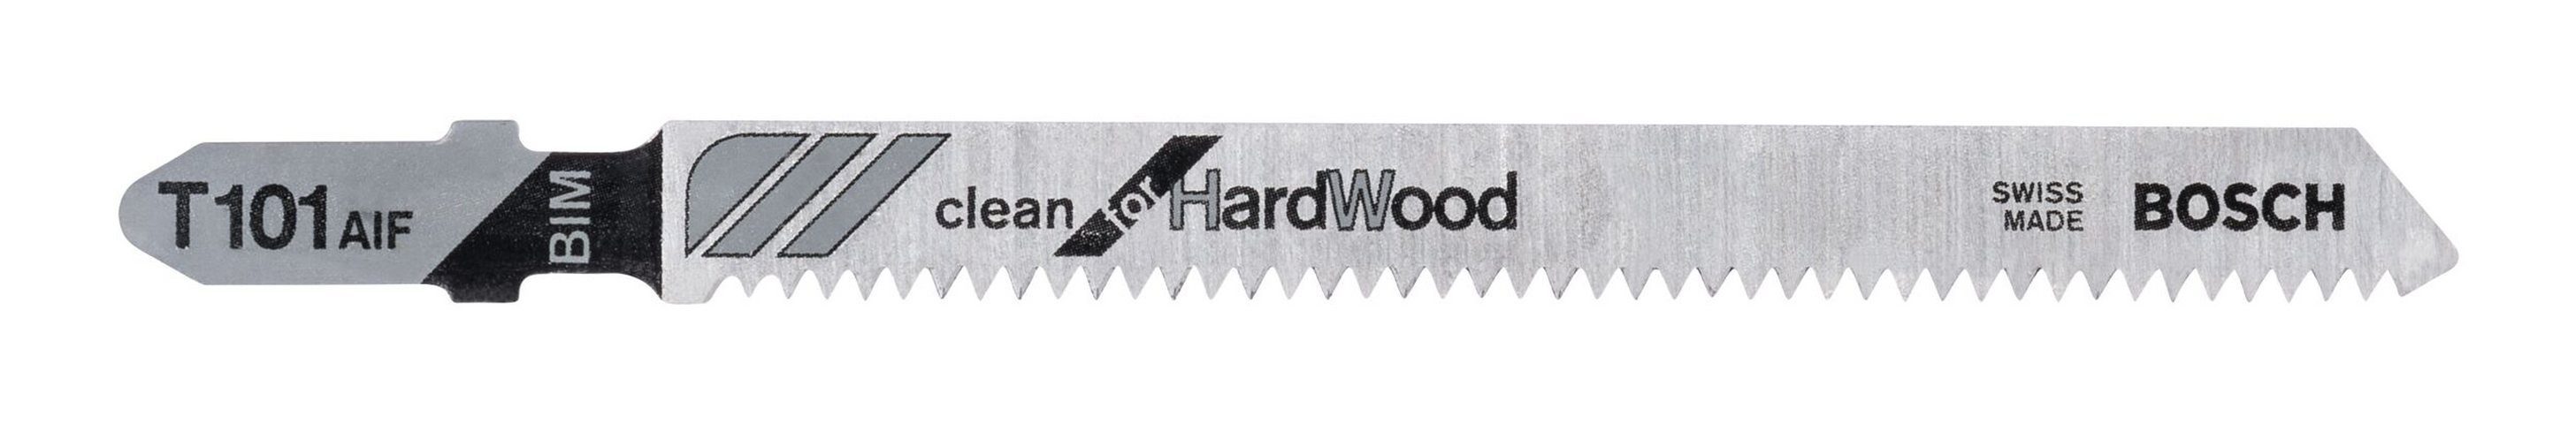 BOSCH Stichsägeblatt (5 Stück), T 101 AIF Clean for Hard Wood - 5er-Pack